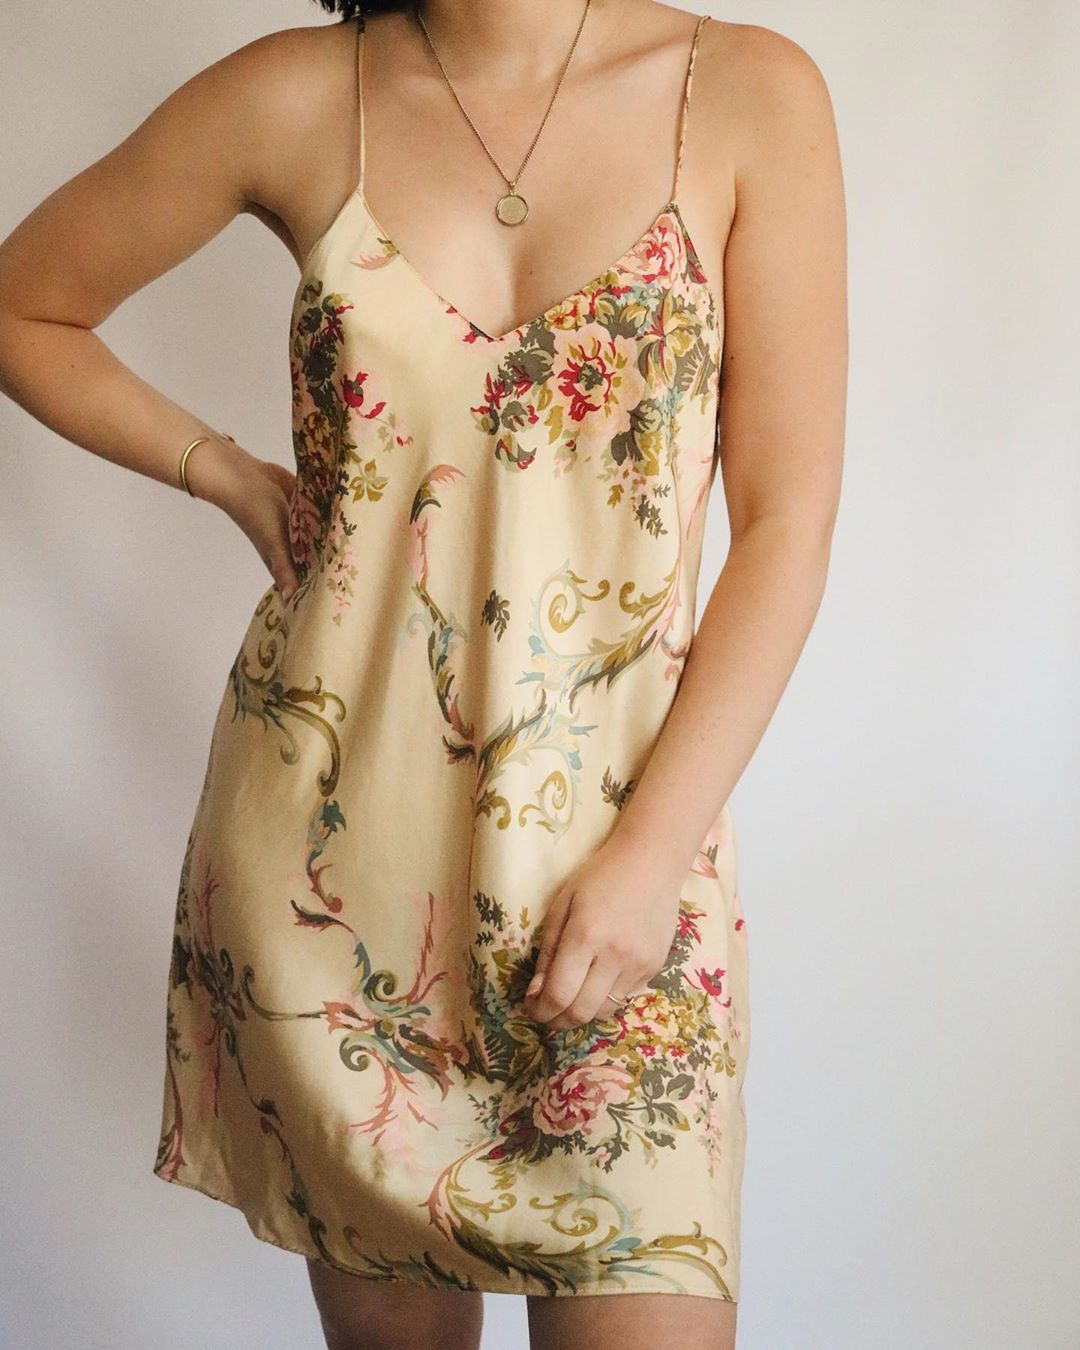 ann hageman recommends victoria secret vintage slip dress pic